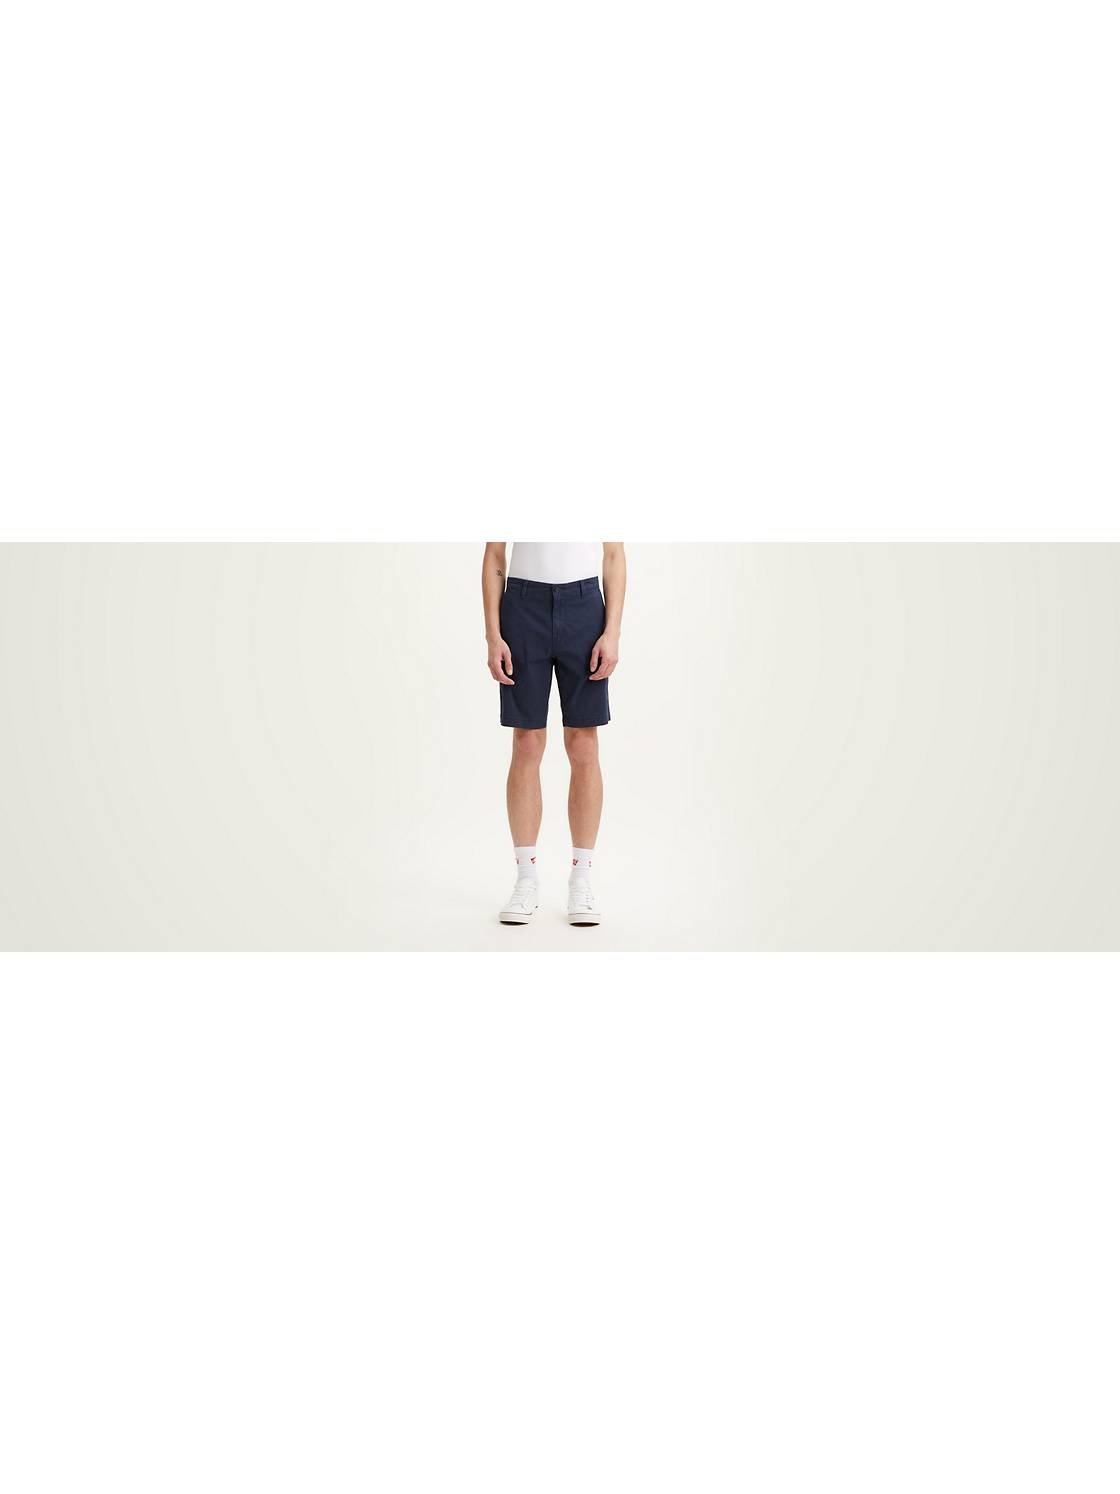 XX Chino Shorts 1